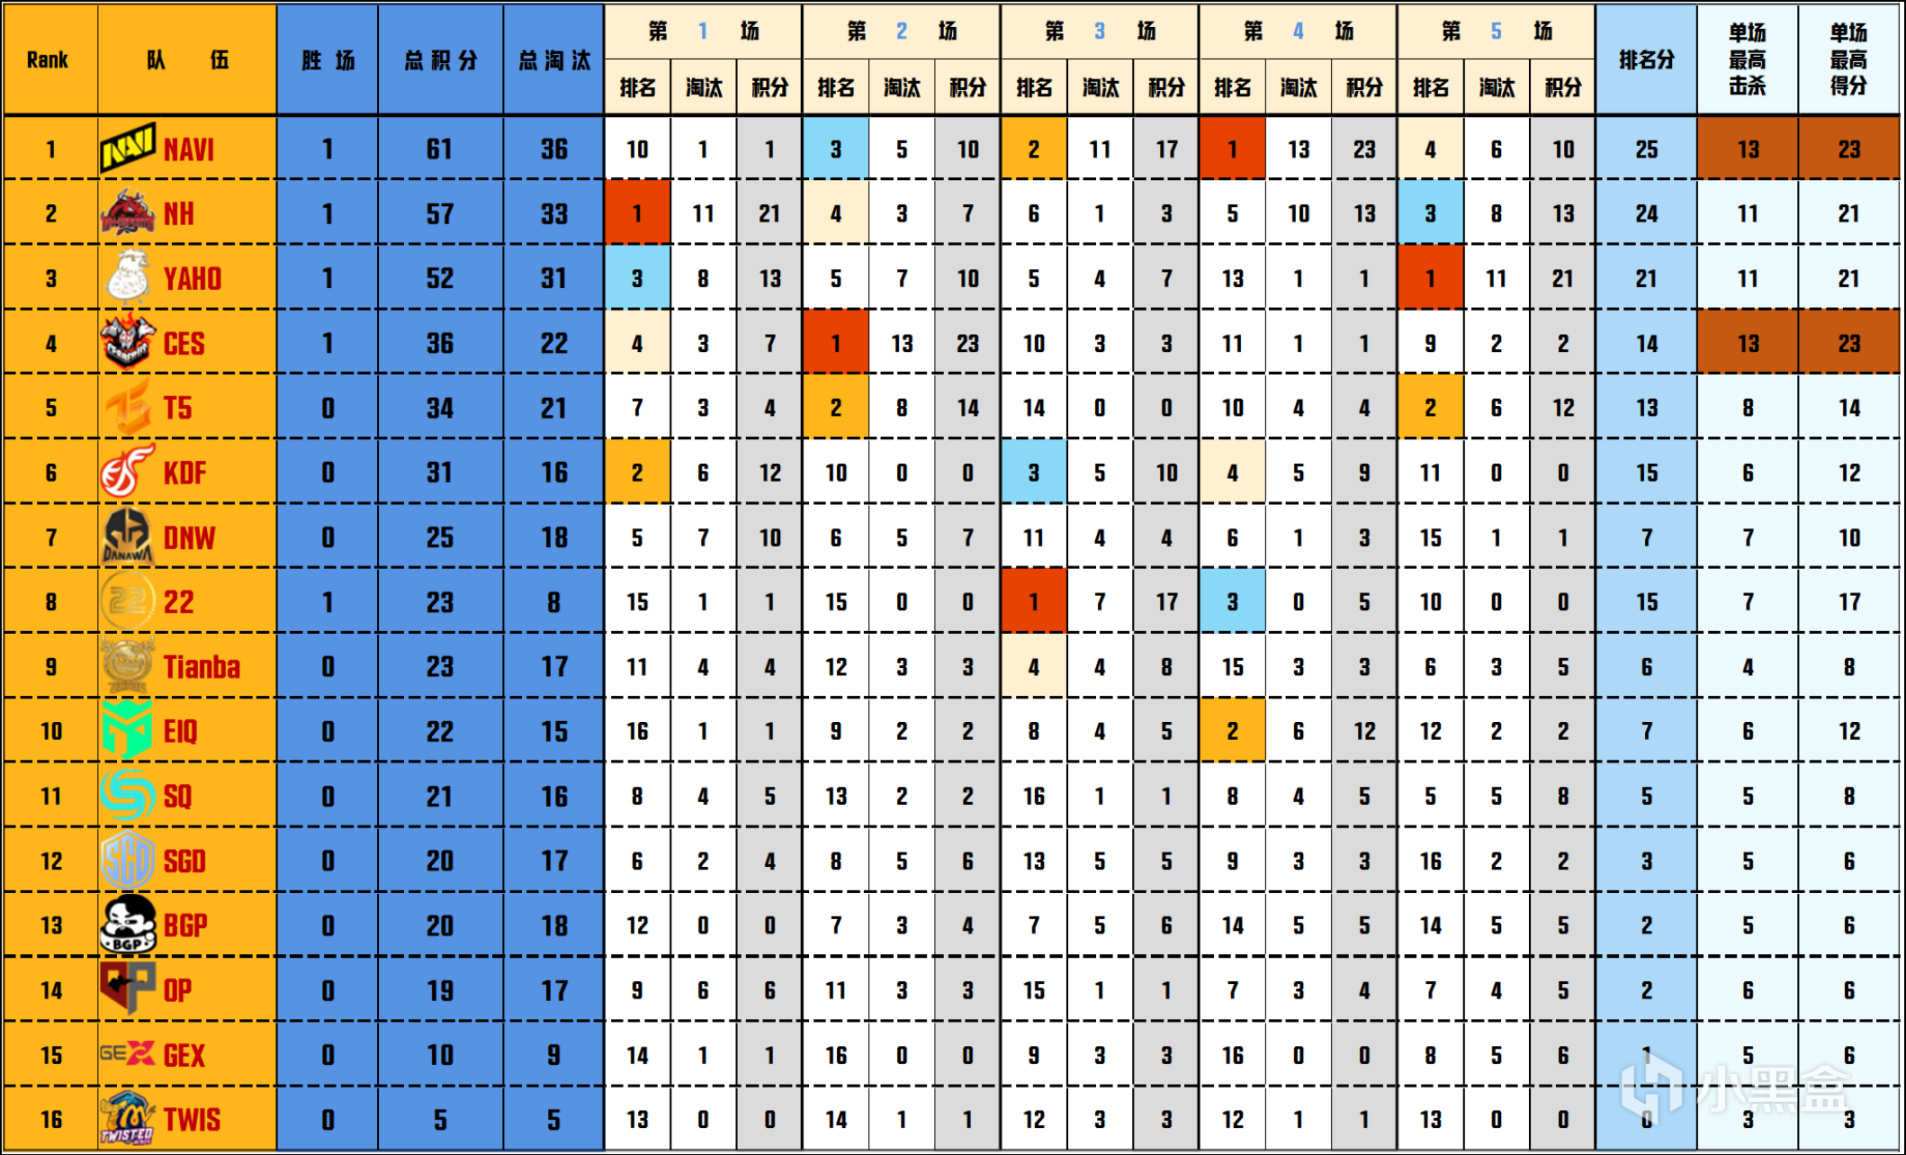 【数据流】PGC-A组,NAVI 129分第一,NH晋级胜者组,Tian落入败者组-第3张